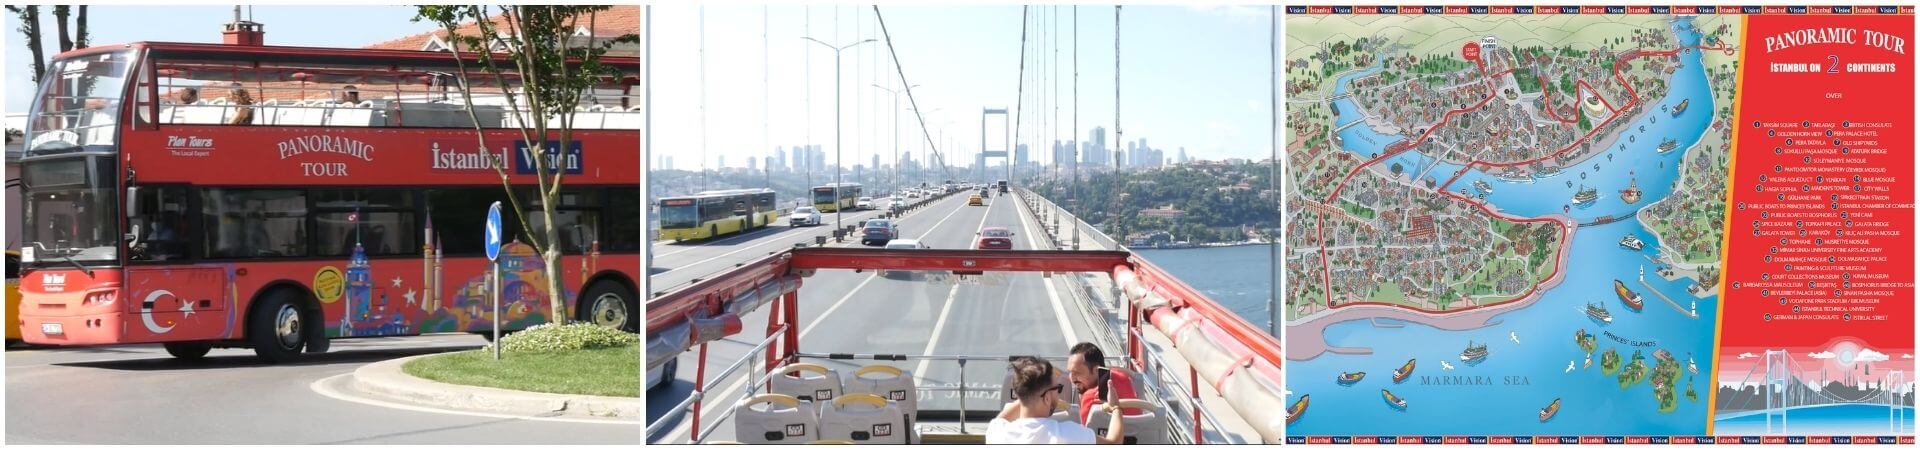 جولة بانورامية بالحافلة في اسطنبول